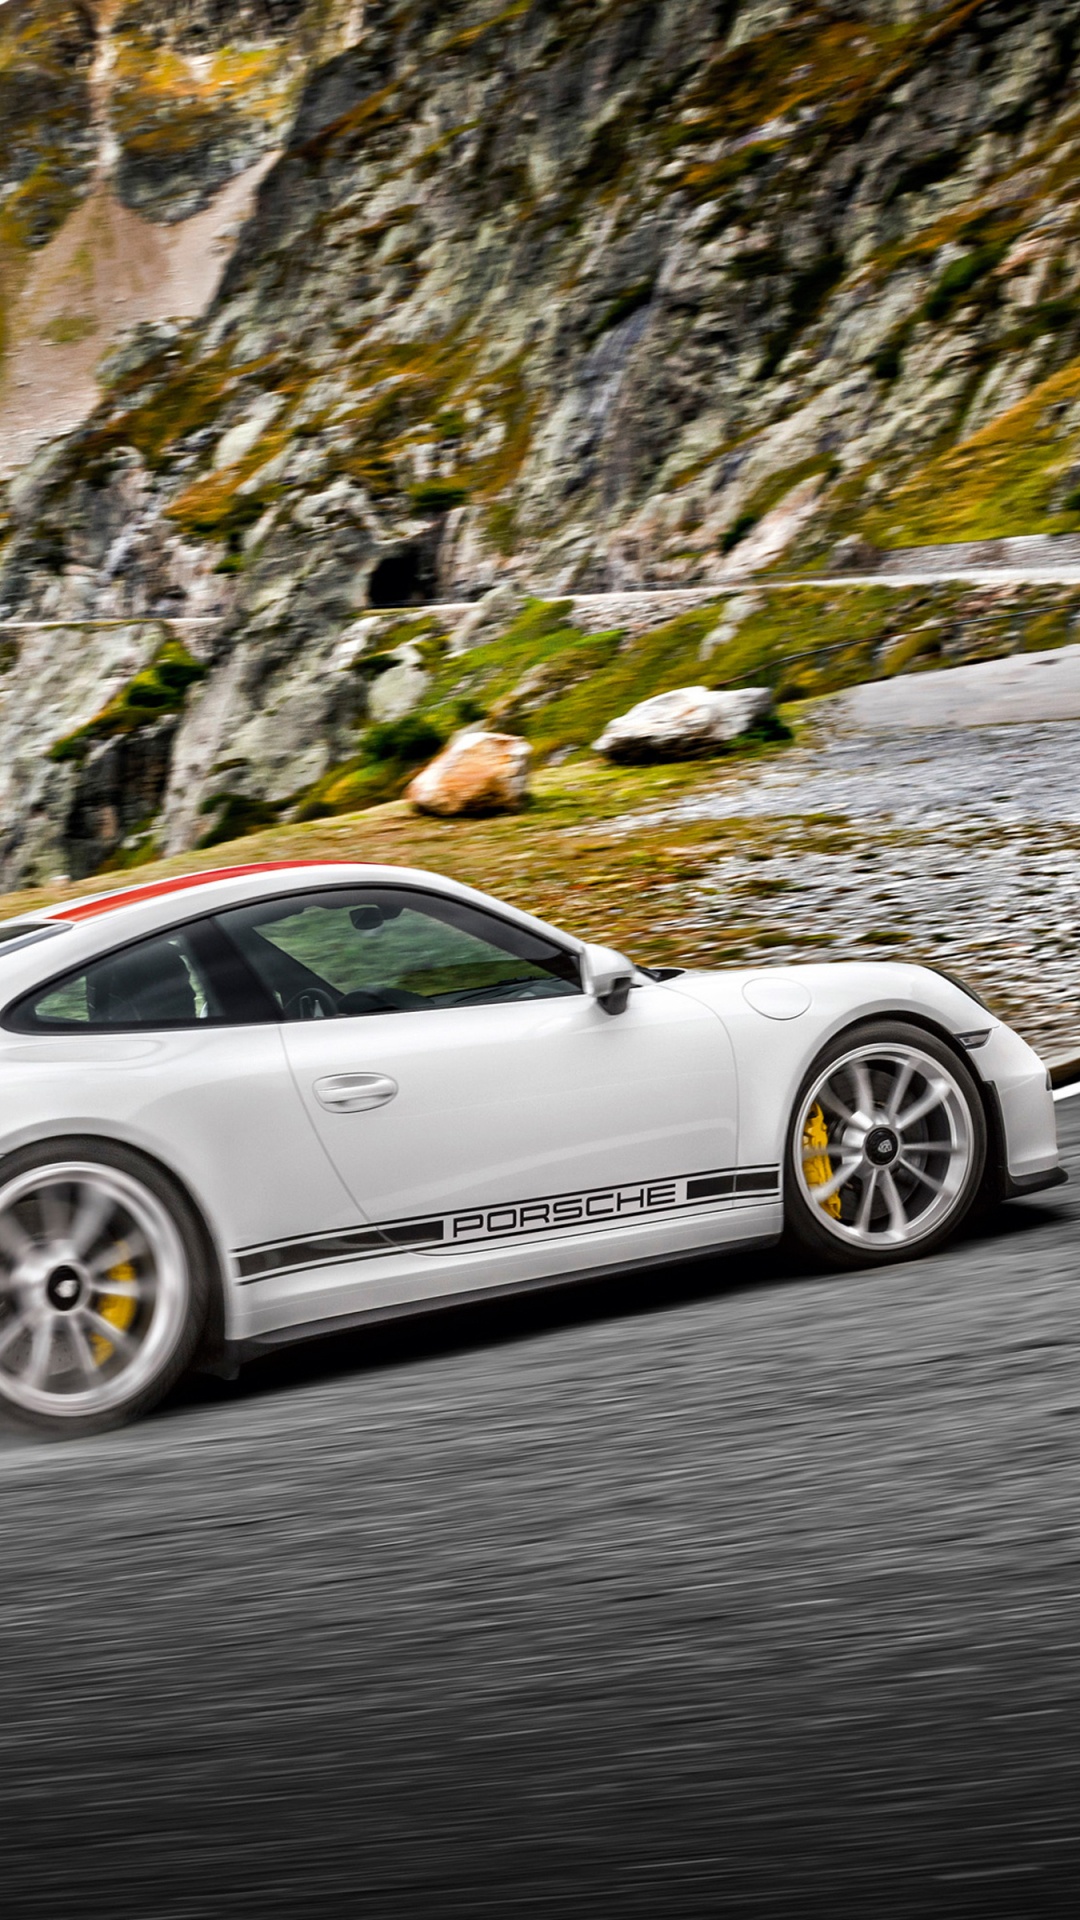 White Porsche 911 on Road. Wallpaper in 1080x1920 Resolution